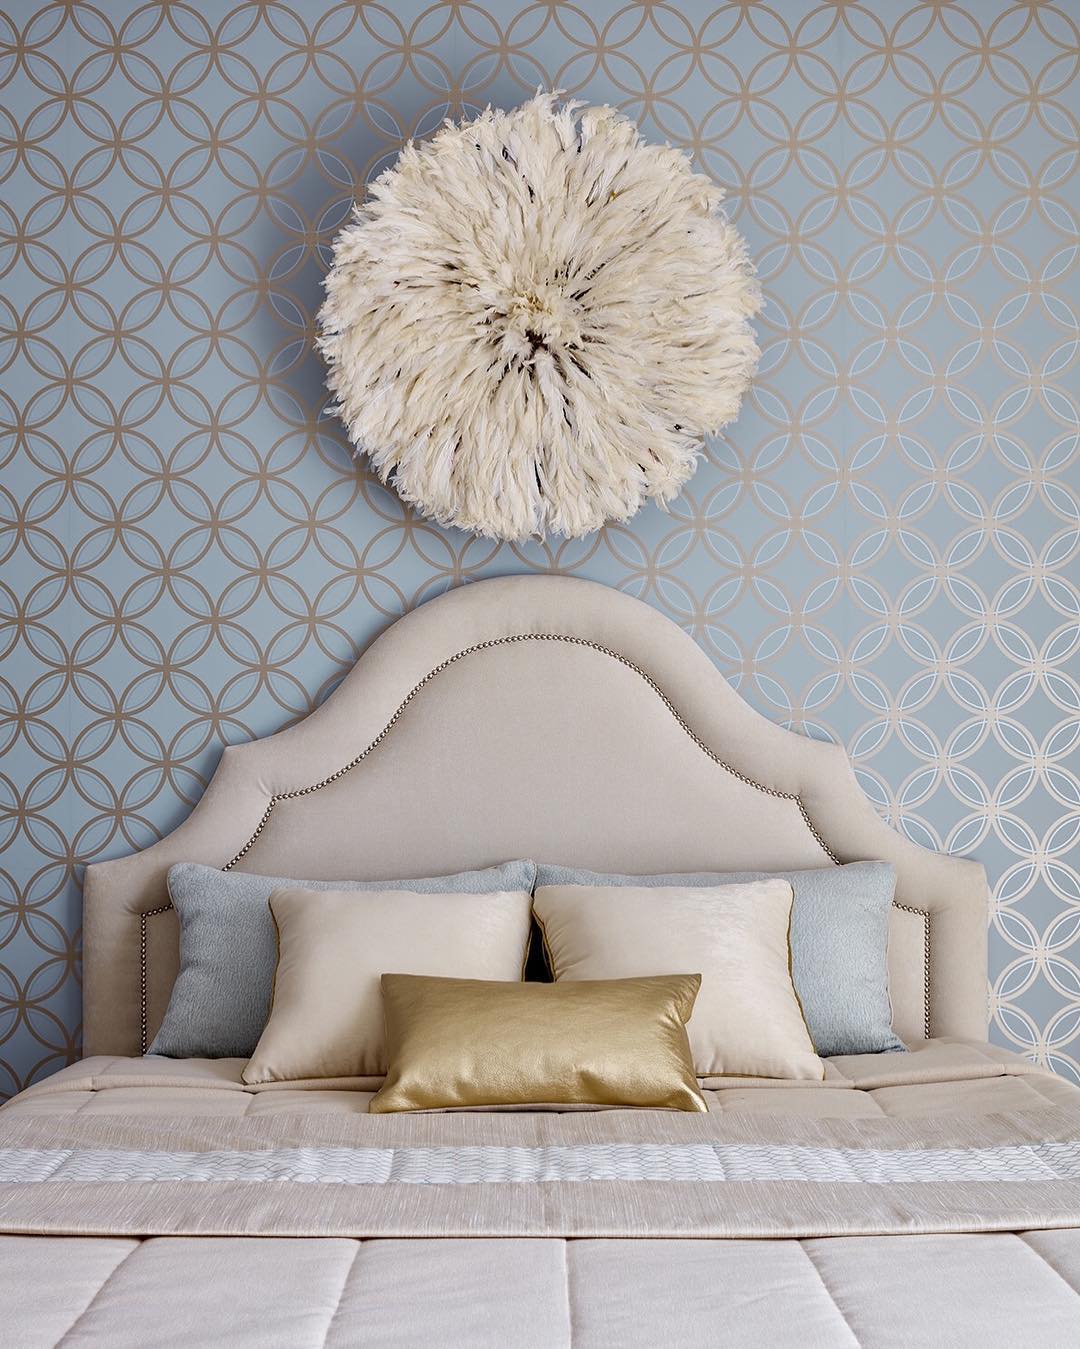 Дизайн спальни фото с идеями оформления из книги «Дом мечты»